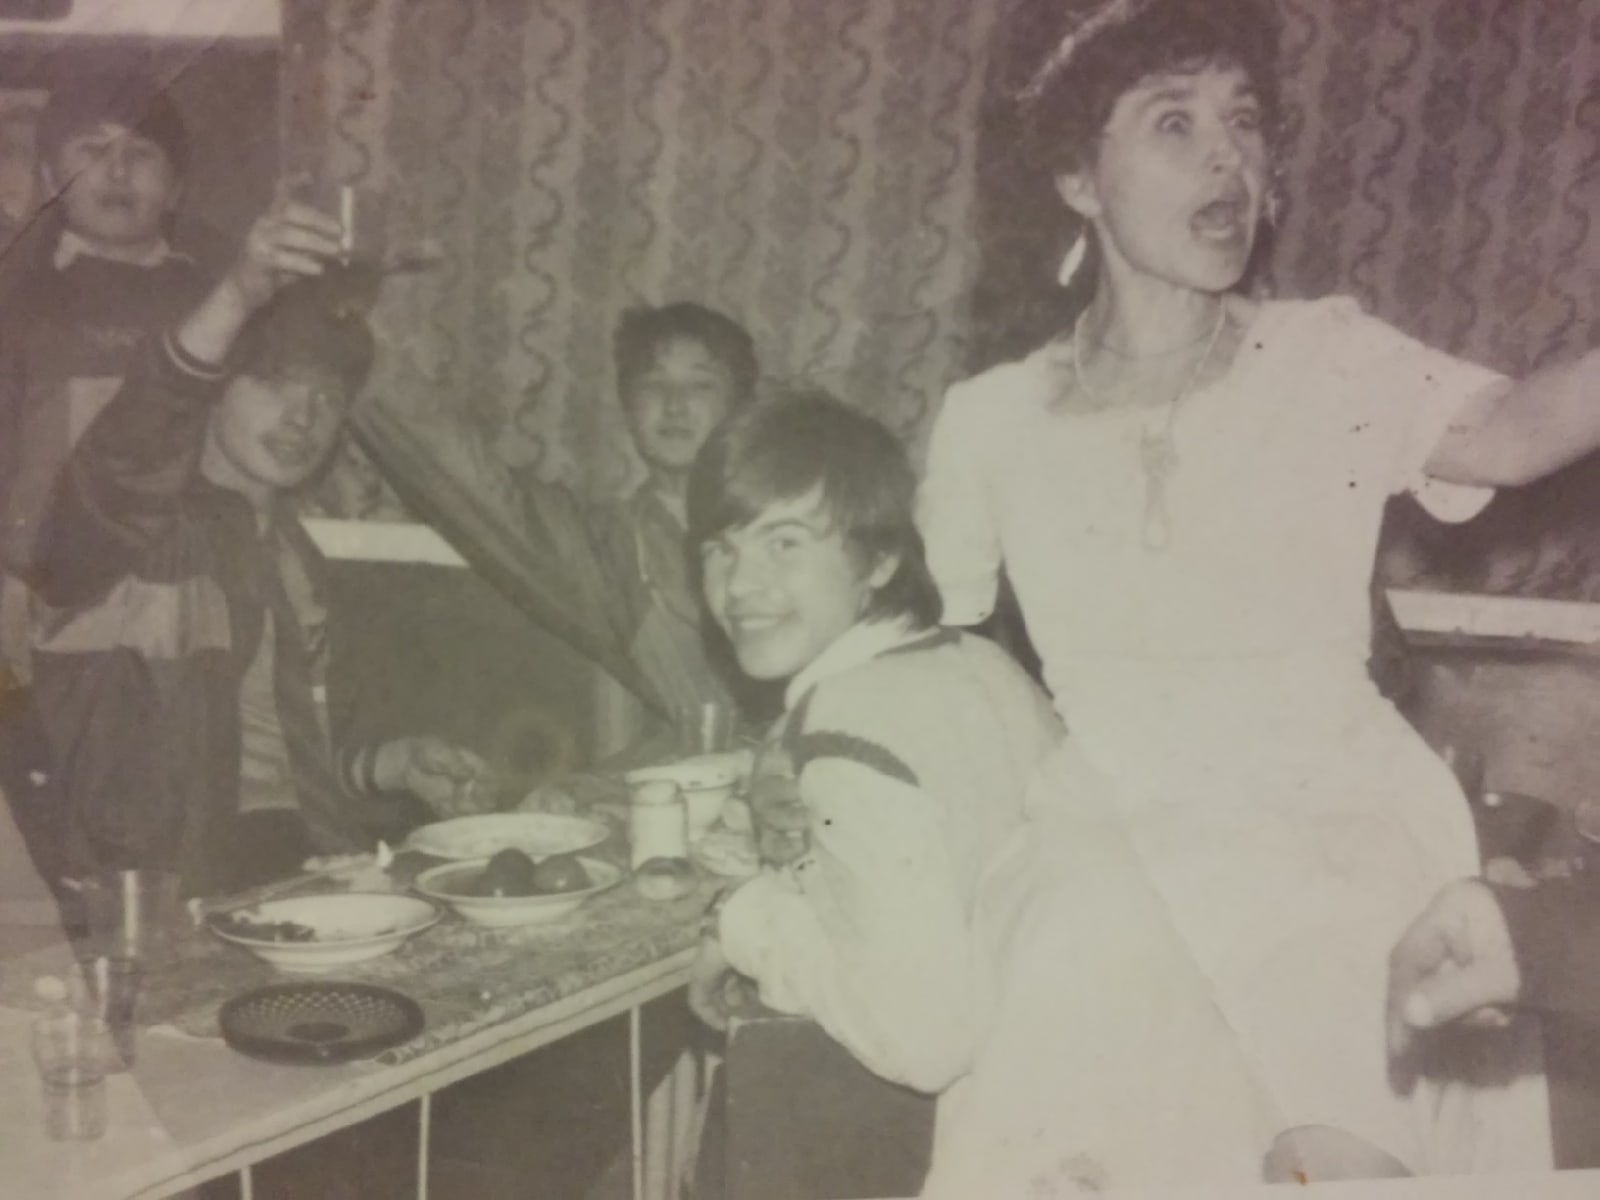 Веселый Новый год 1993-го. В моде еще с 80-х усы у мужчин. «На снимке я (слева), брат и мама» — сказал Игорь Рапацевич